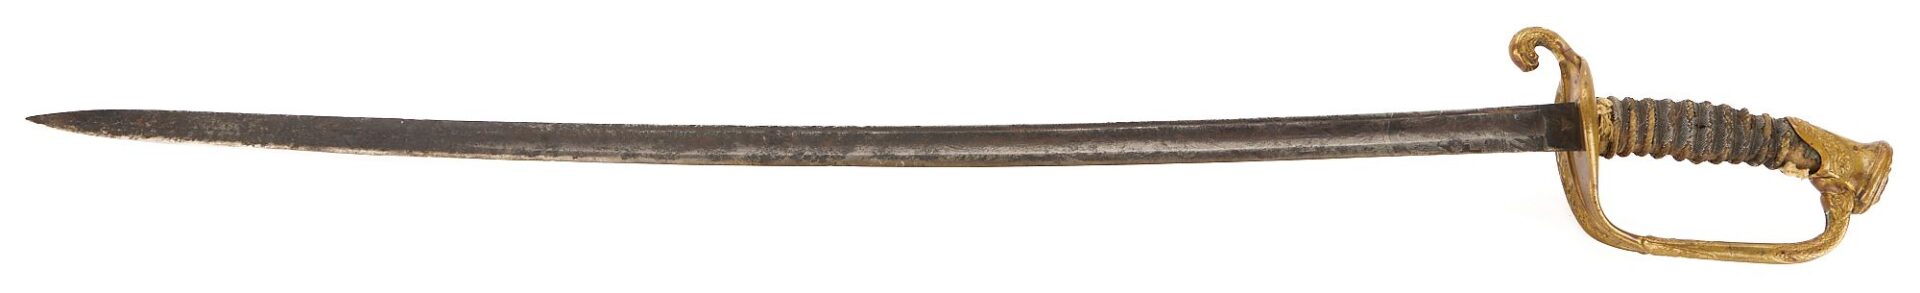 Lot 555: 2 M1850 Swords & 1 Naval Officer's Sword, Horstmann Philadelphia & NY